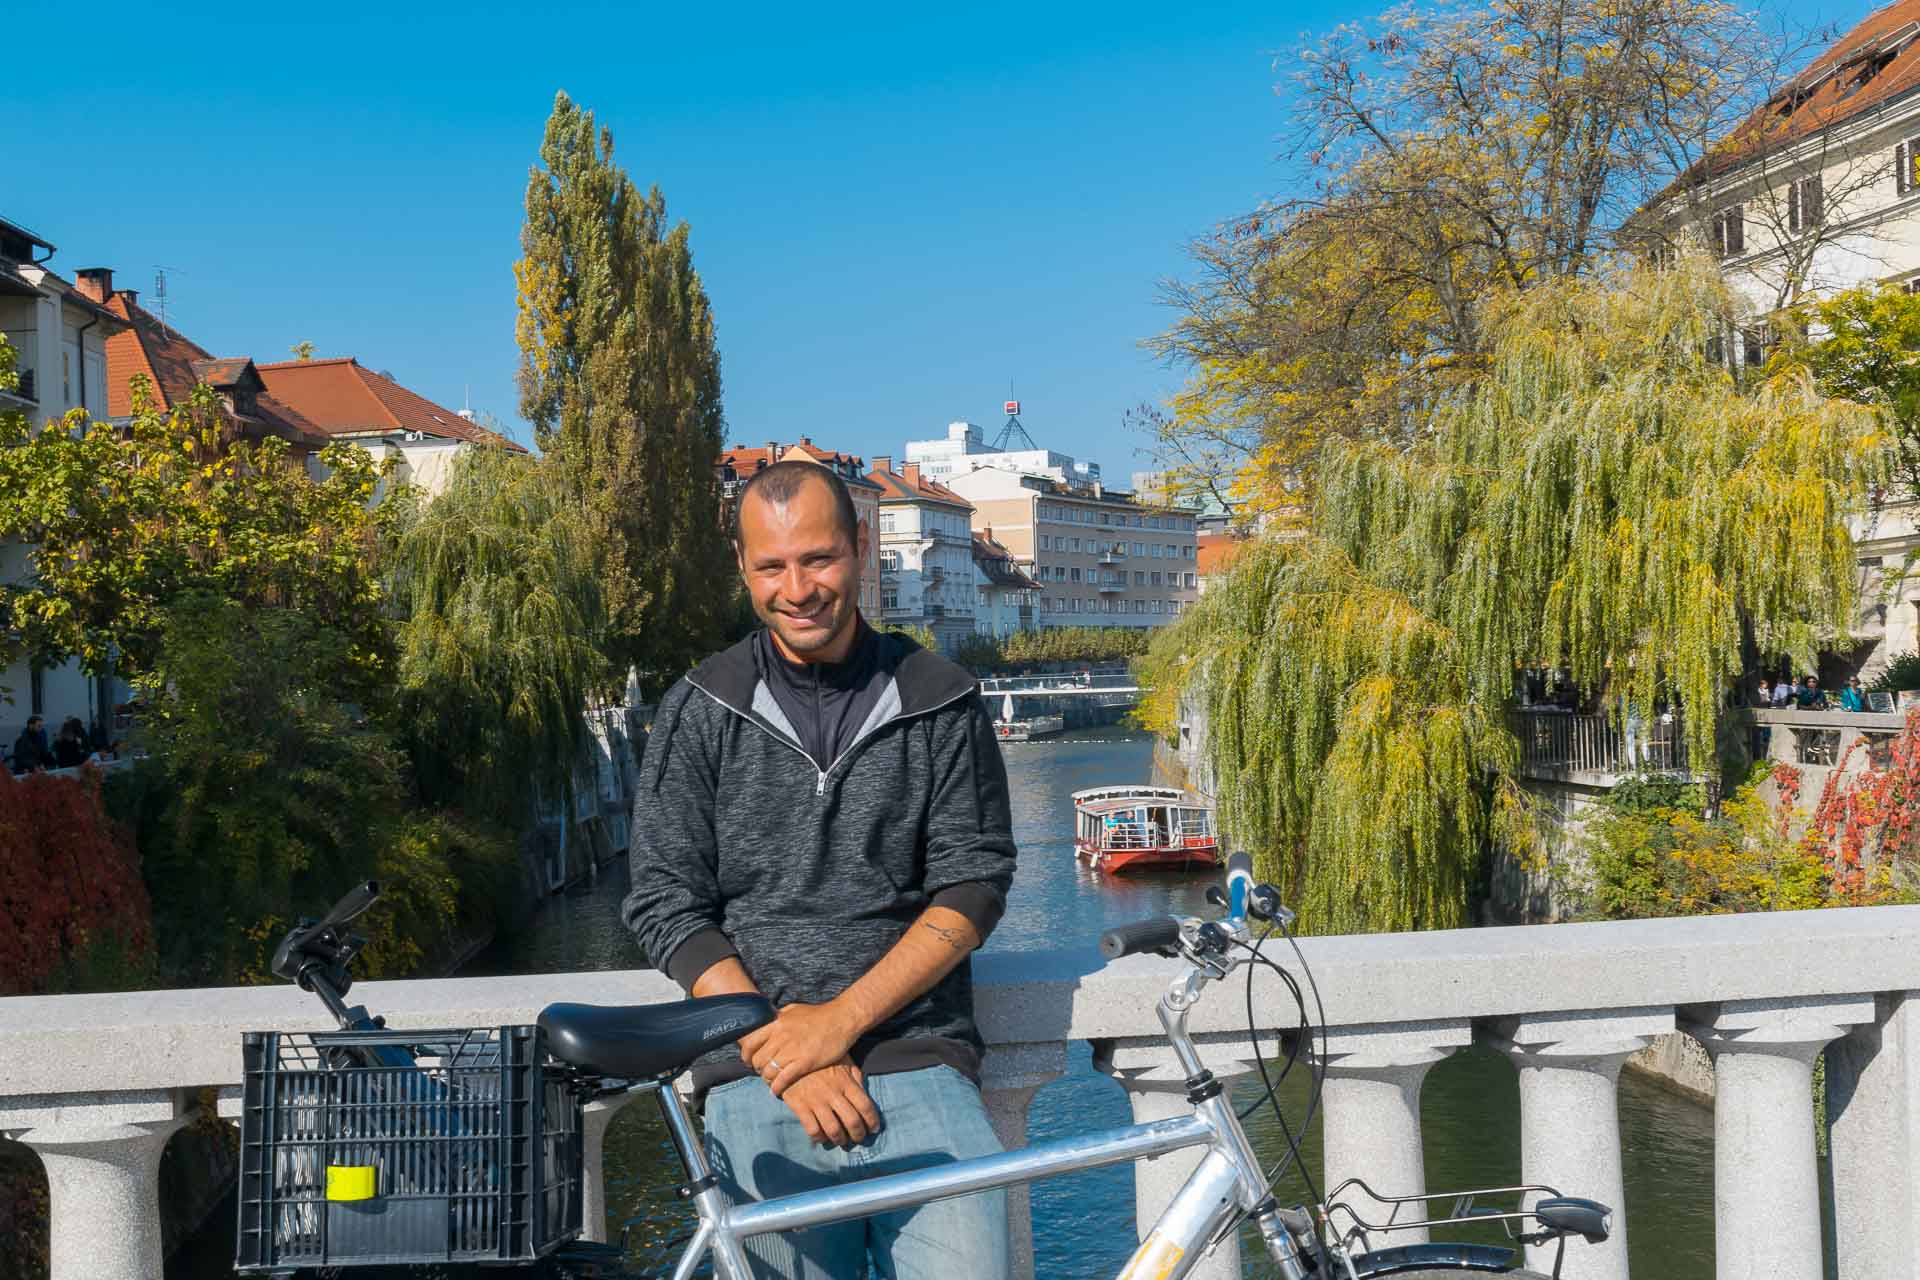 Tiago with his bike in a bridge in Ljubljana